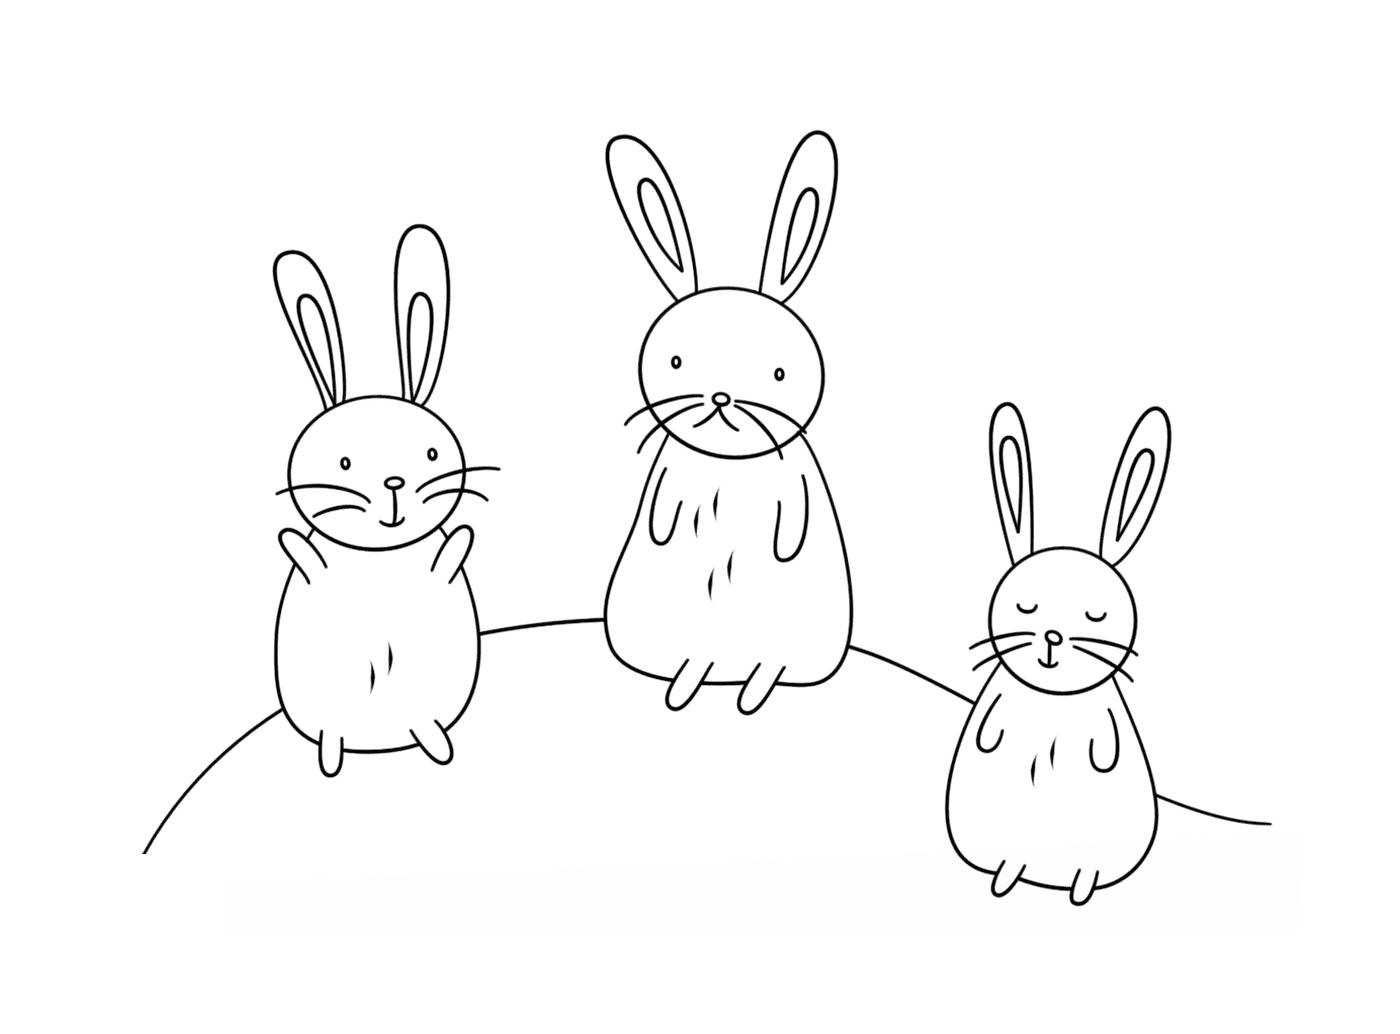  الأرانب الجميلة في مجموعات 